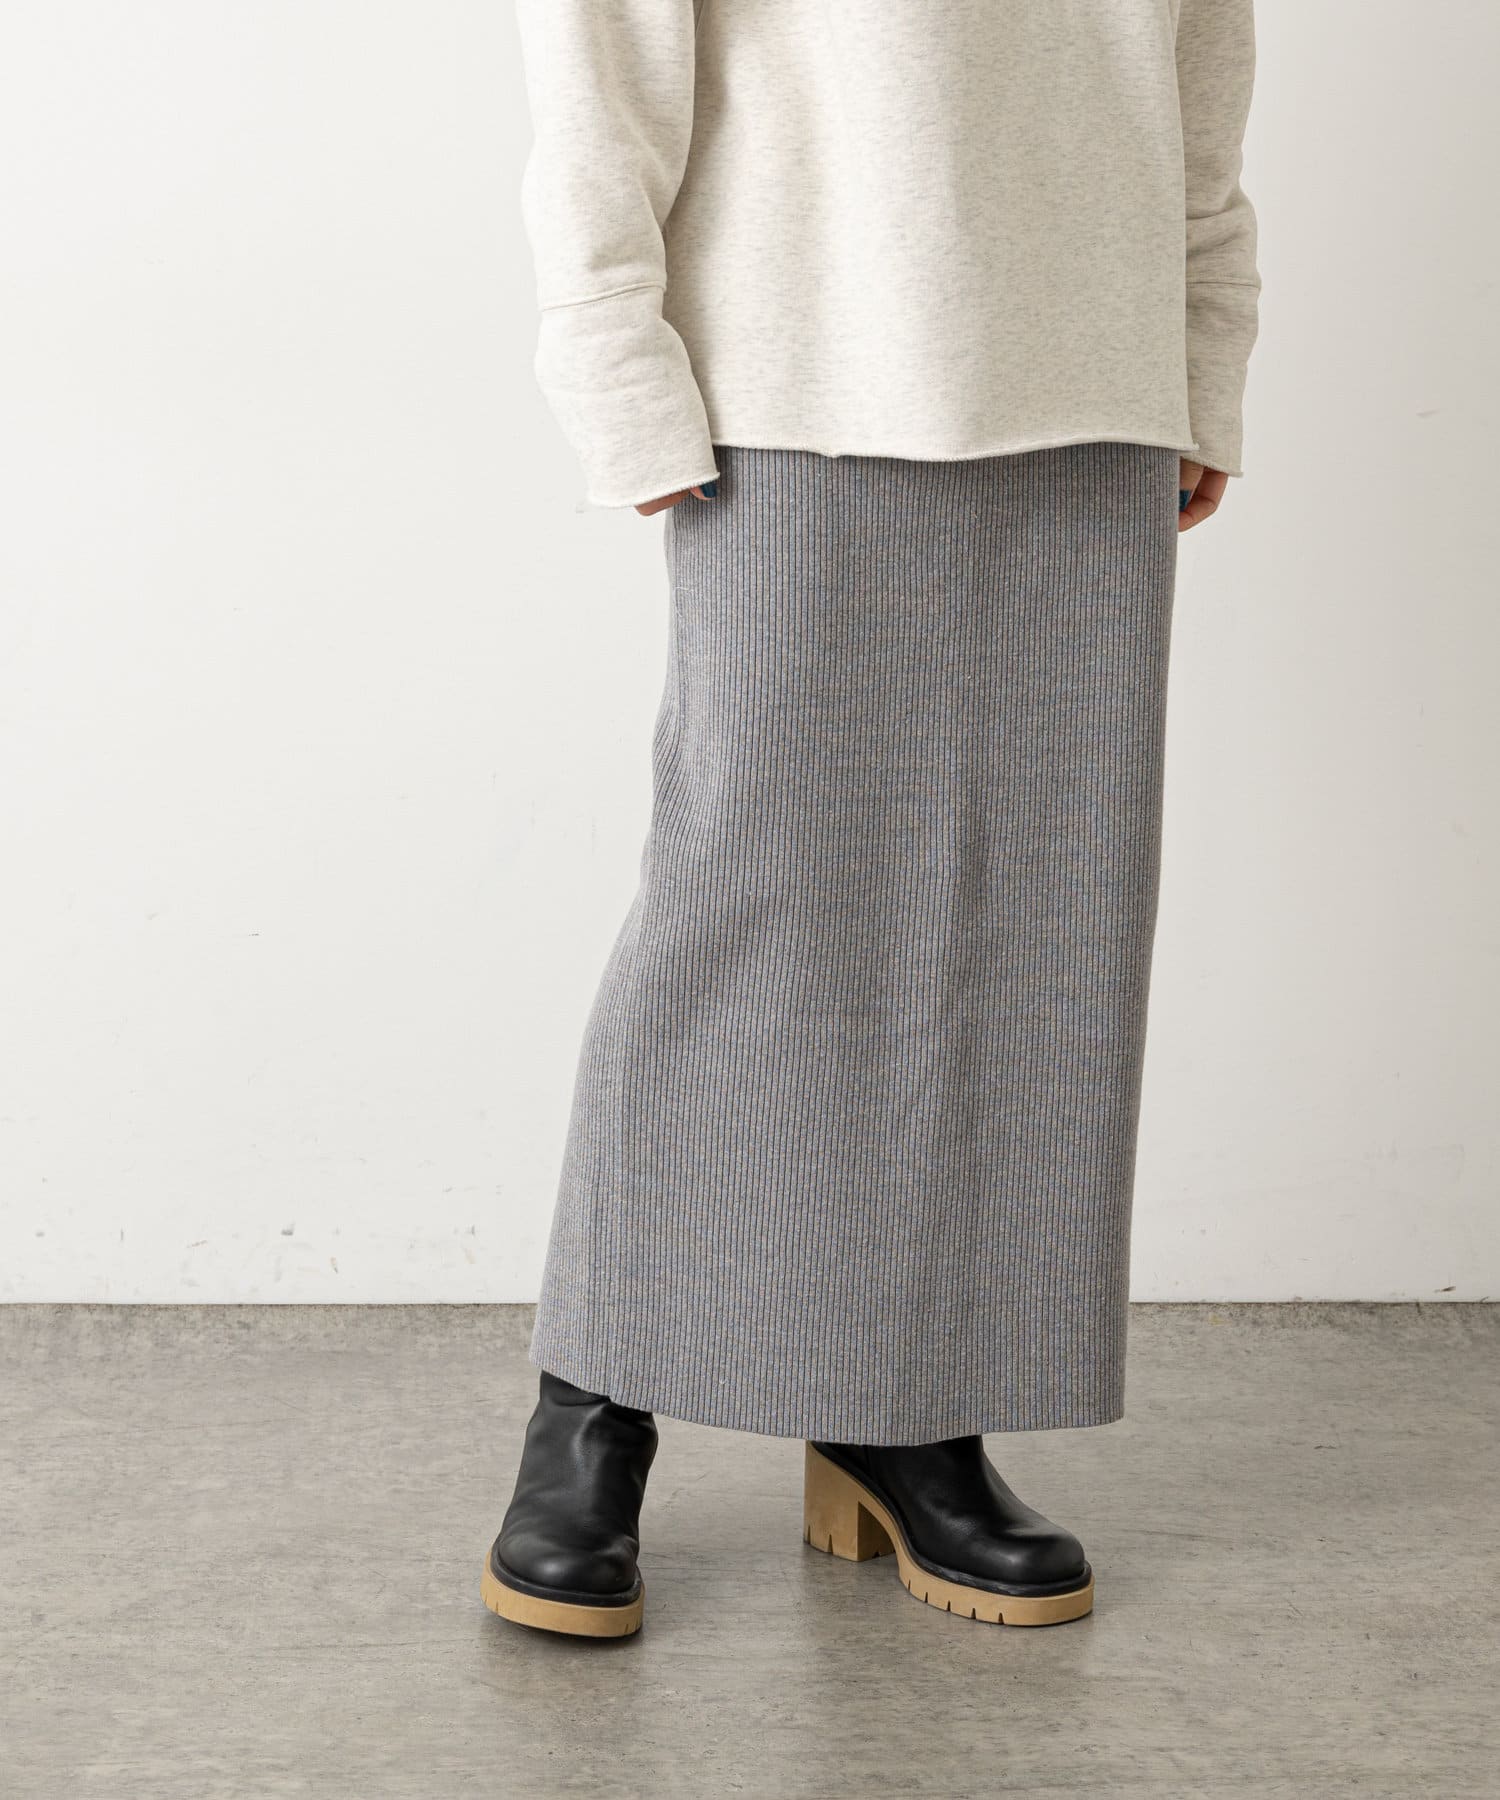 Omekashi(オメカシ) リブタイトスカート